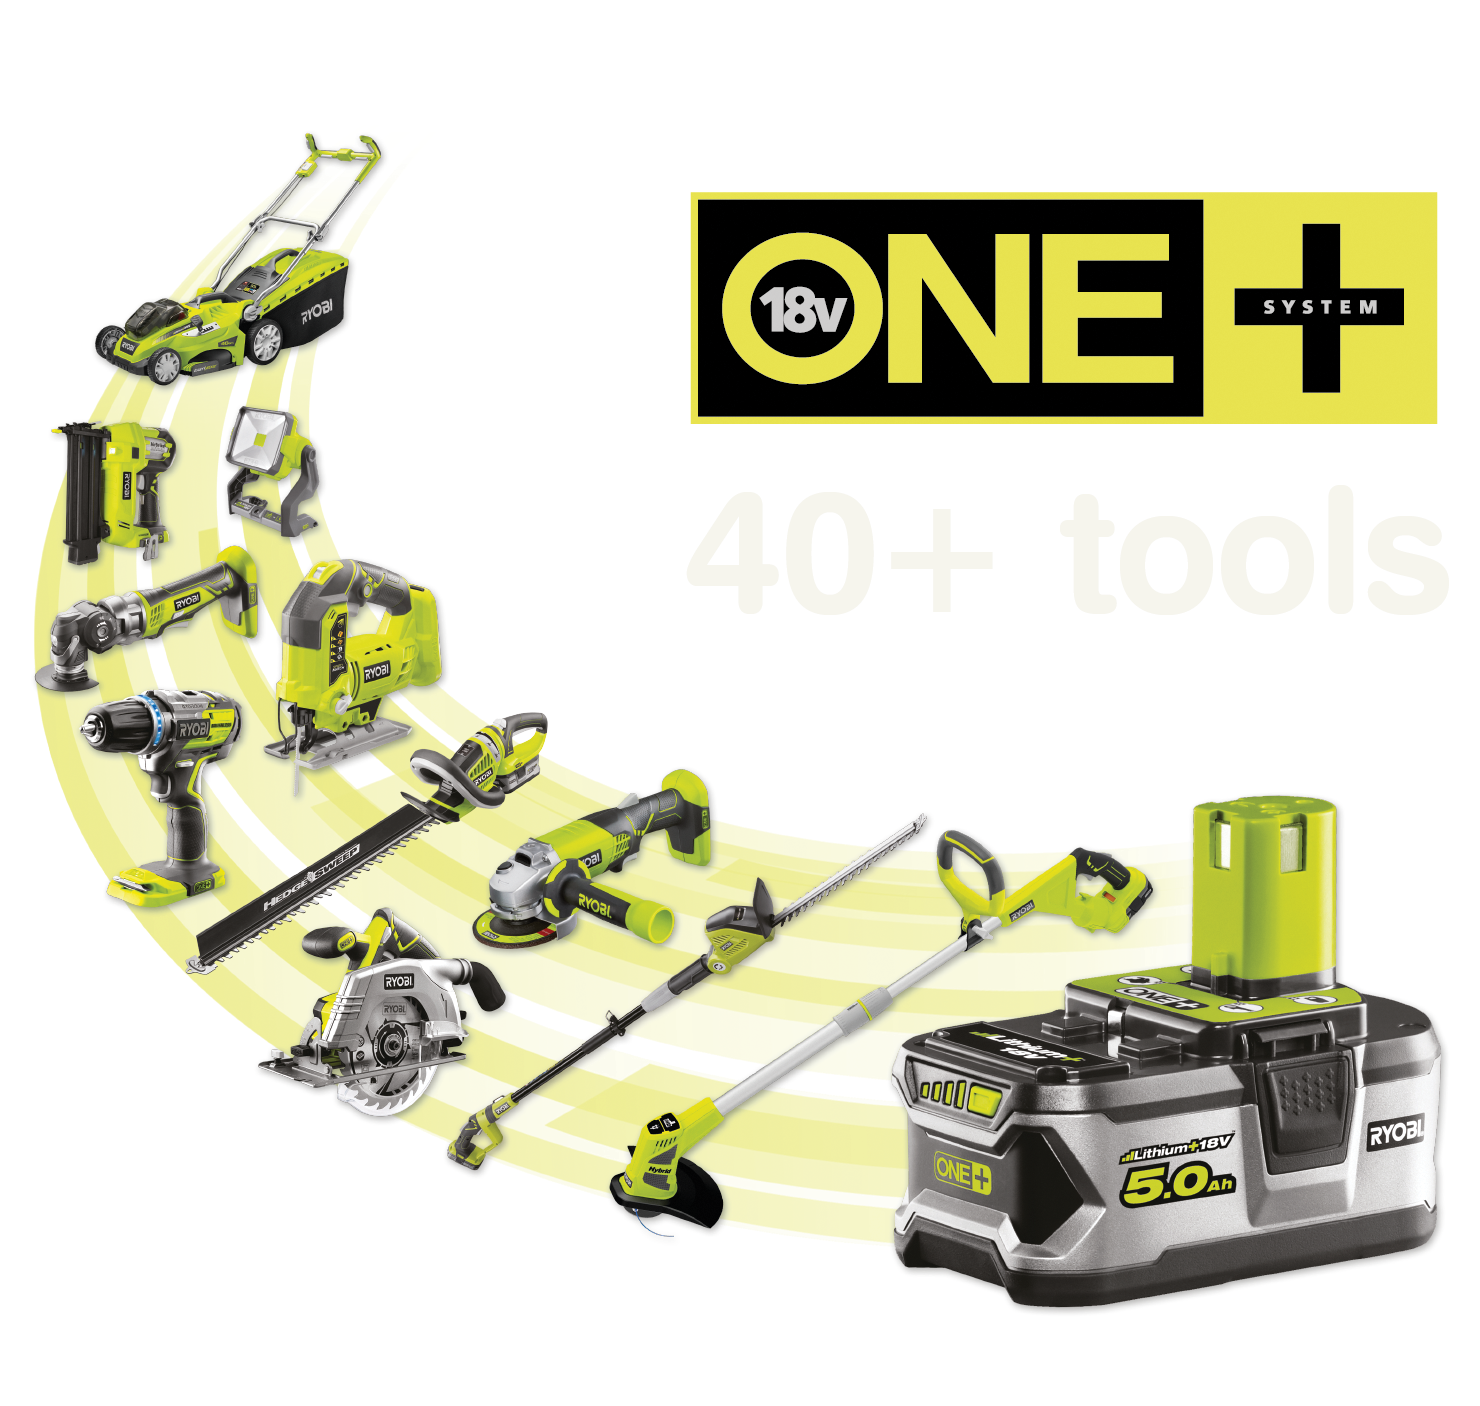 Over 40+ verktøy som drives av det samme ONE+ batteriet